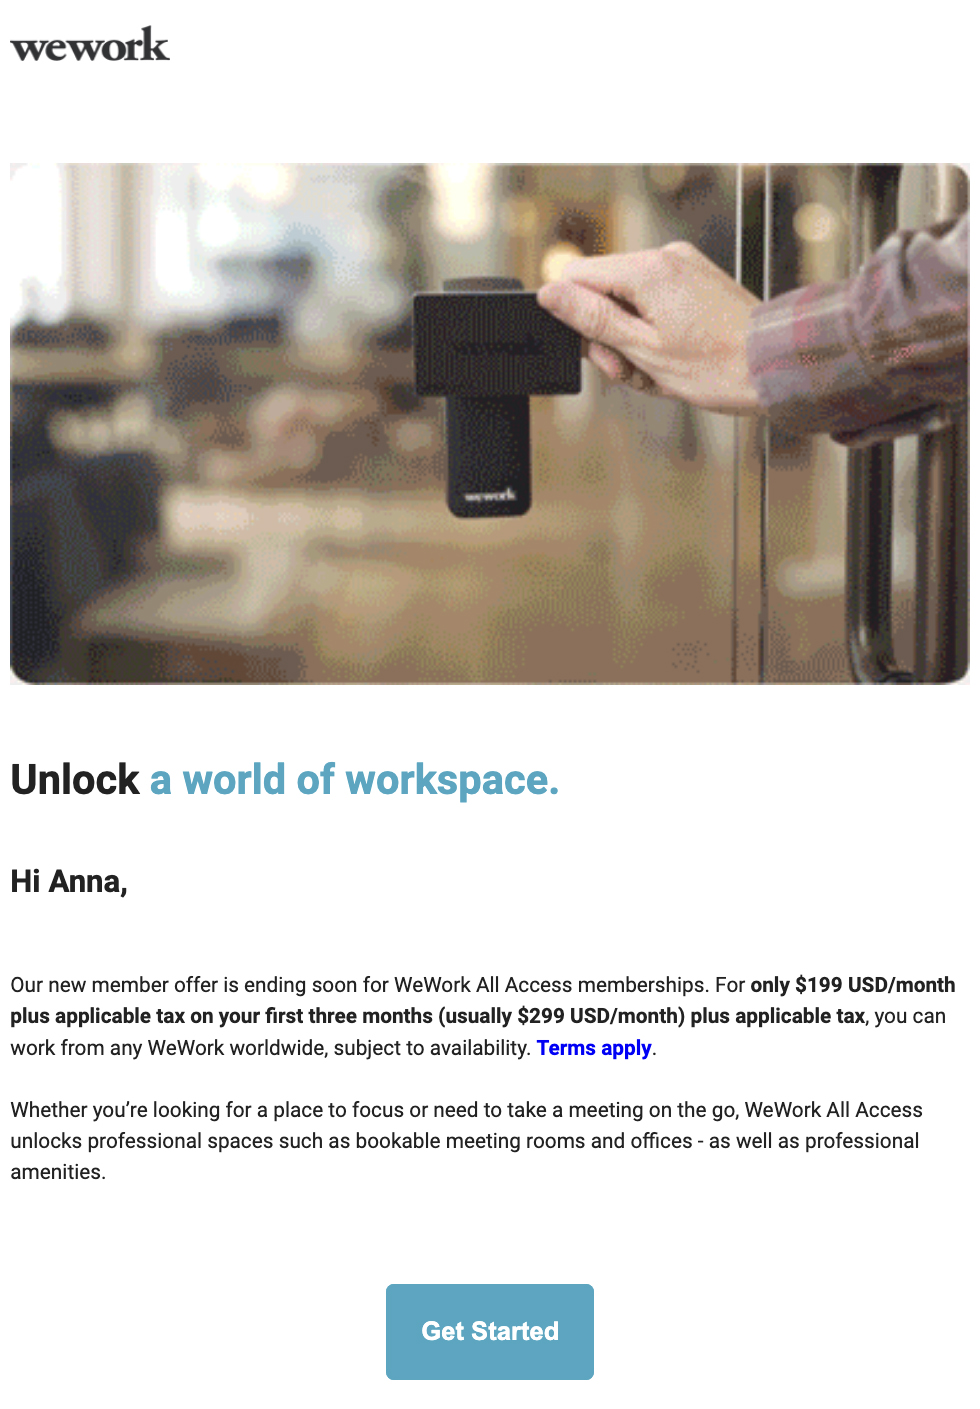 Ejemplo de correo electrónico promocional de WeWork